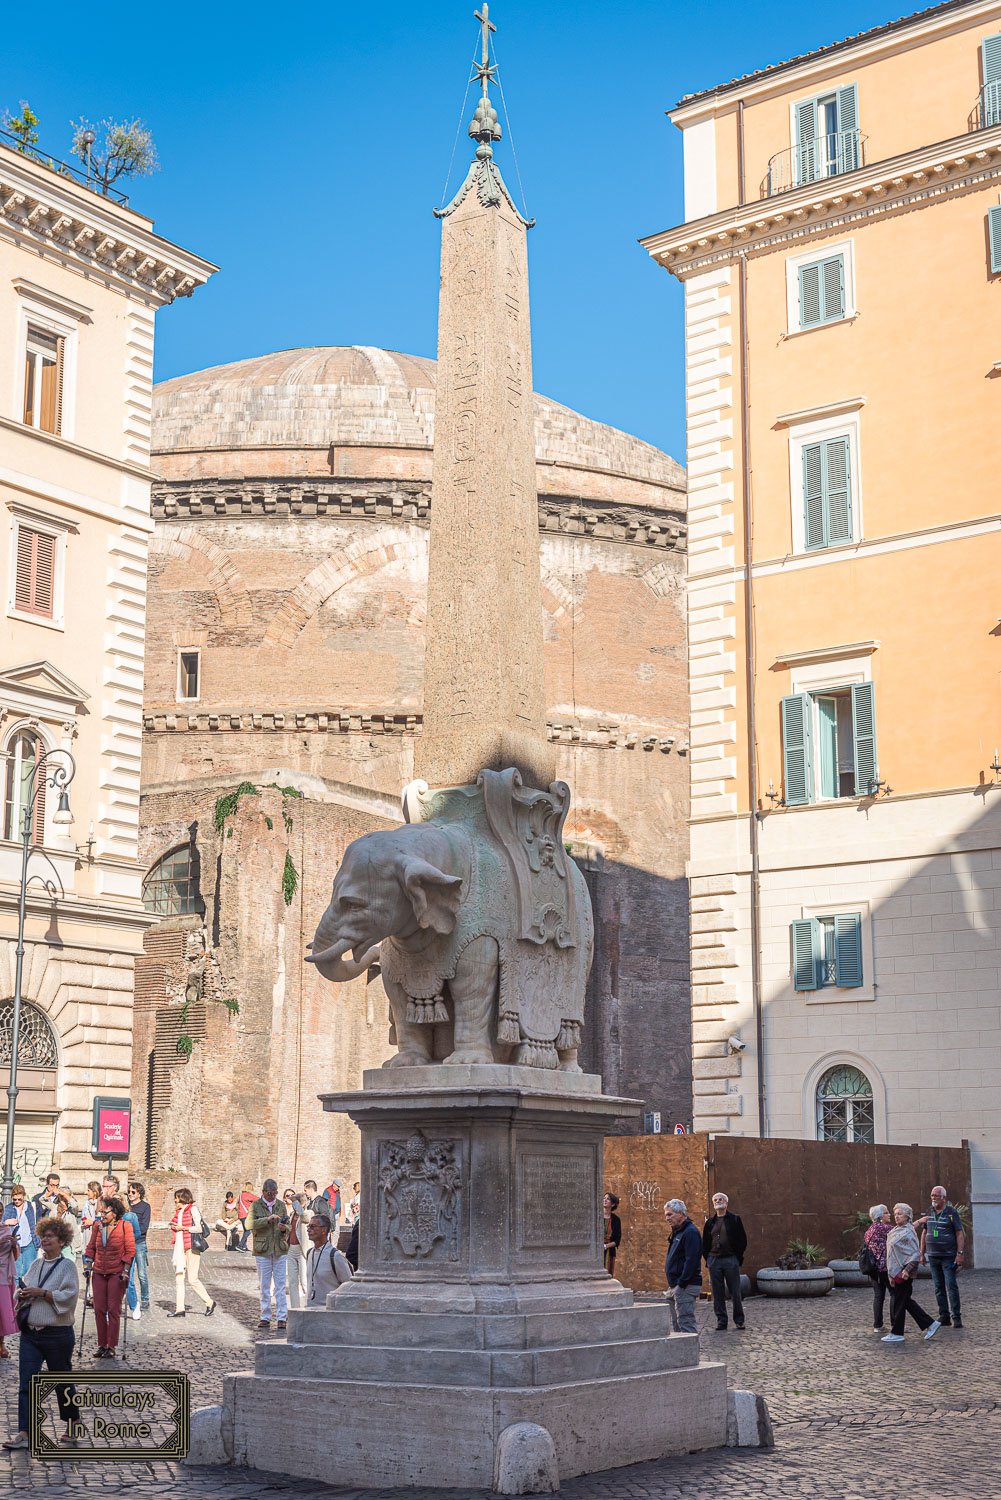 Obelisks In Rome - Egyptian